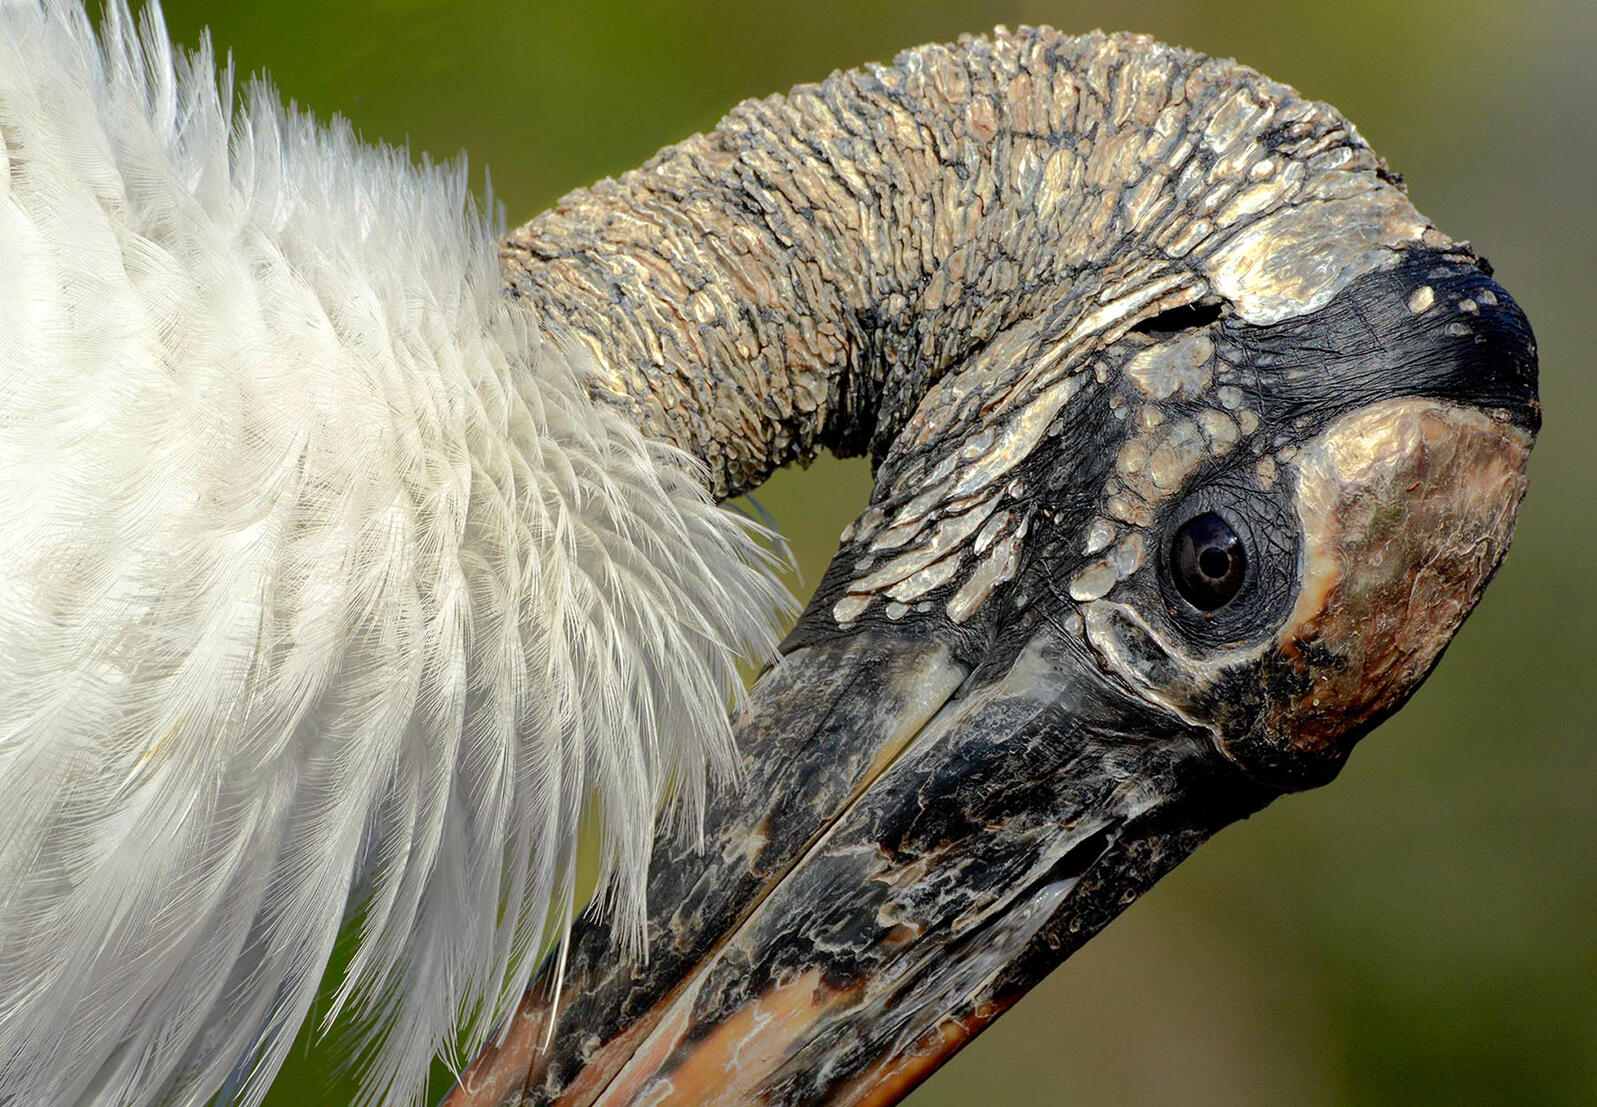 A close up of a Wood Stork's head. Photo: Karen Mason.